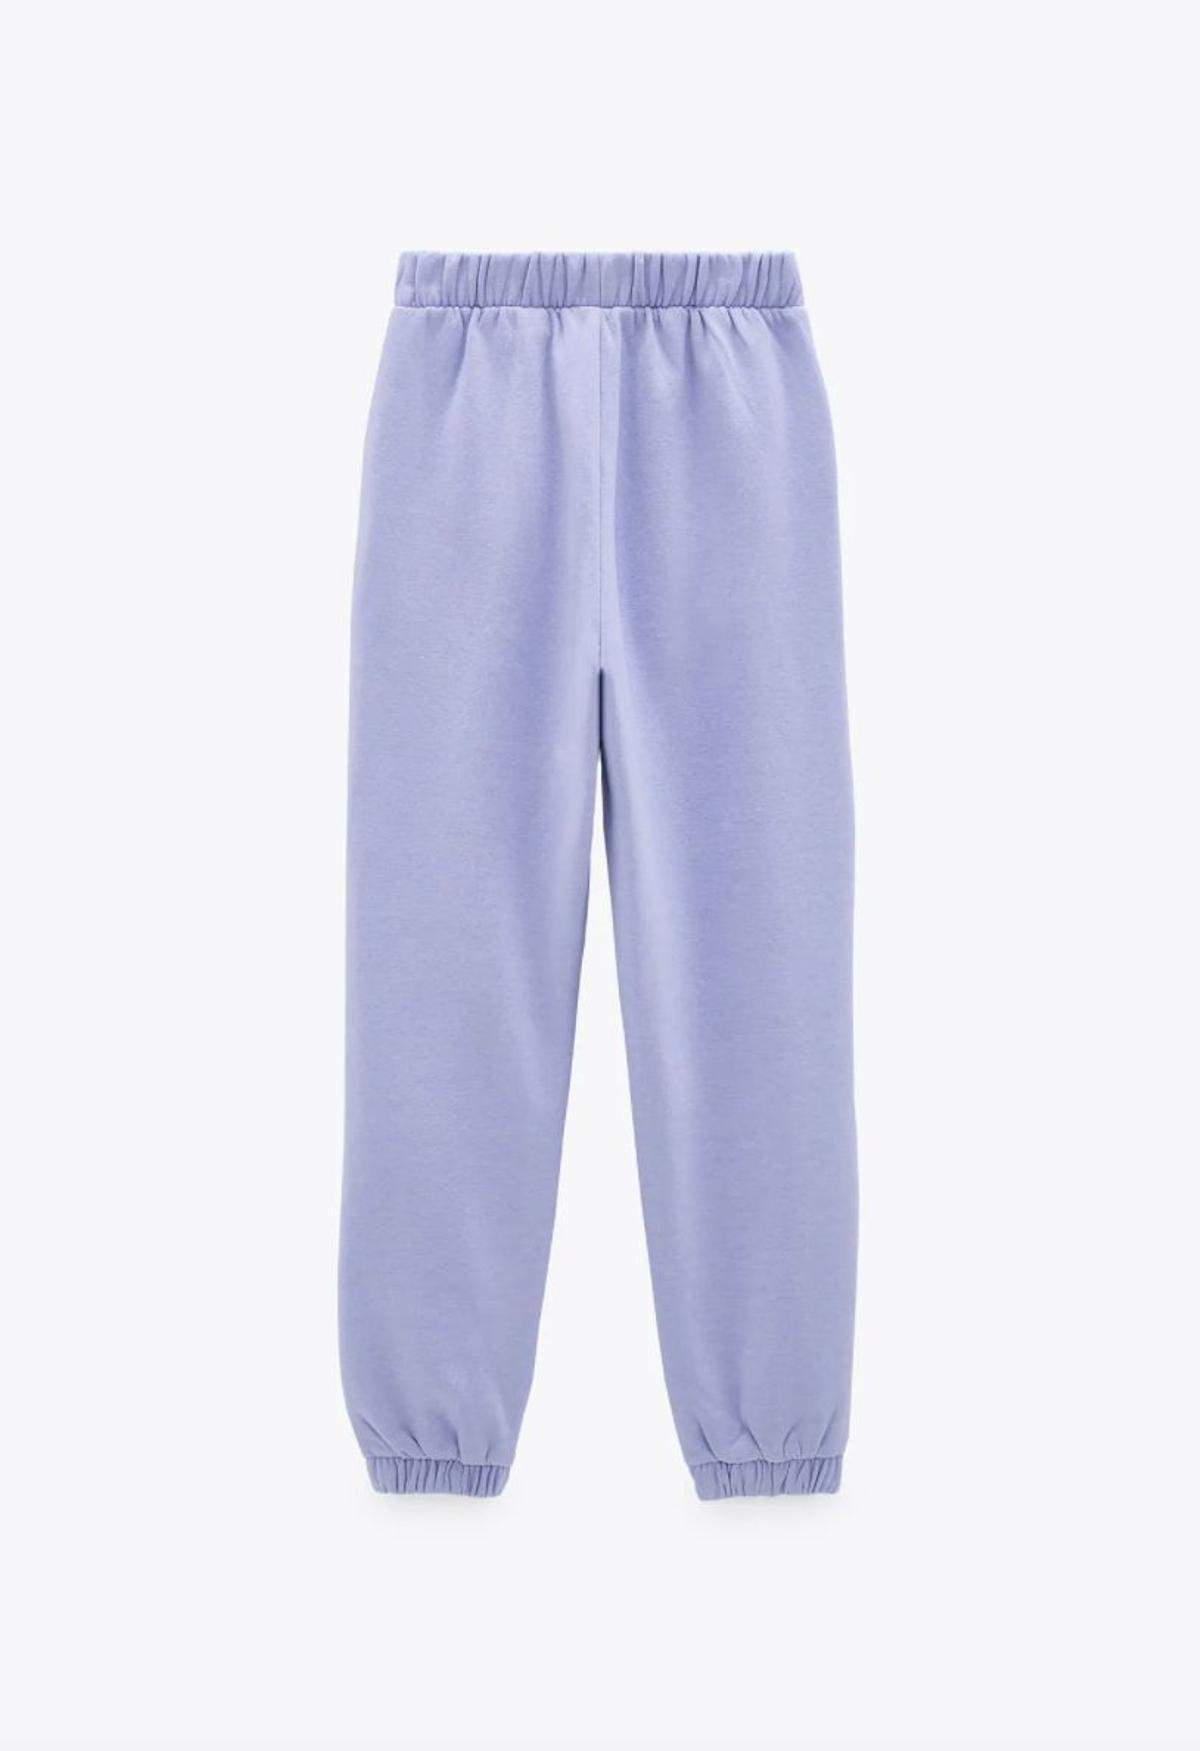 Pantalones joggers en tono lila de Zara